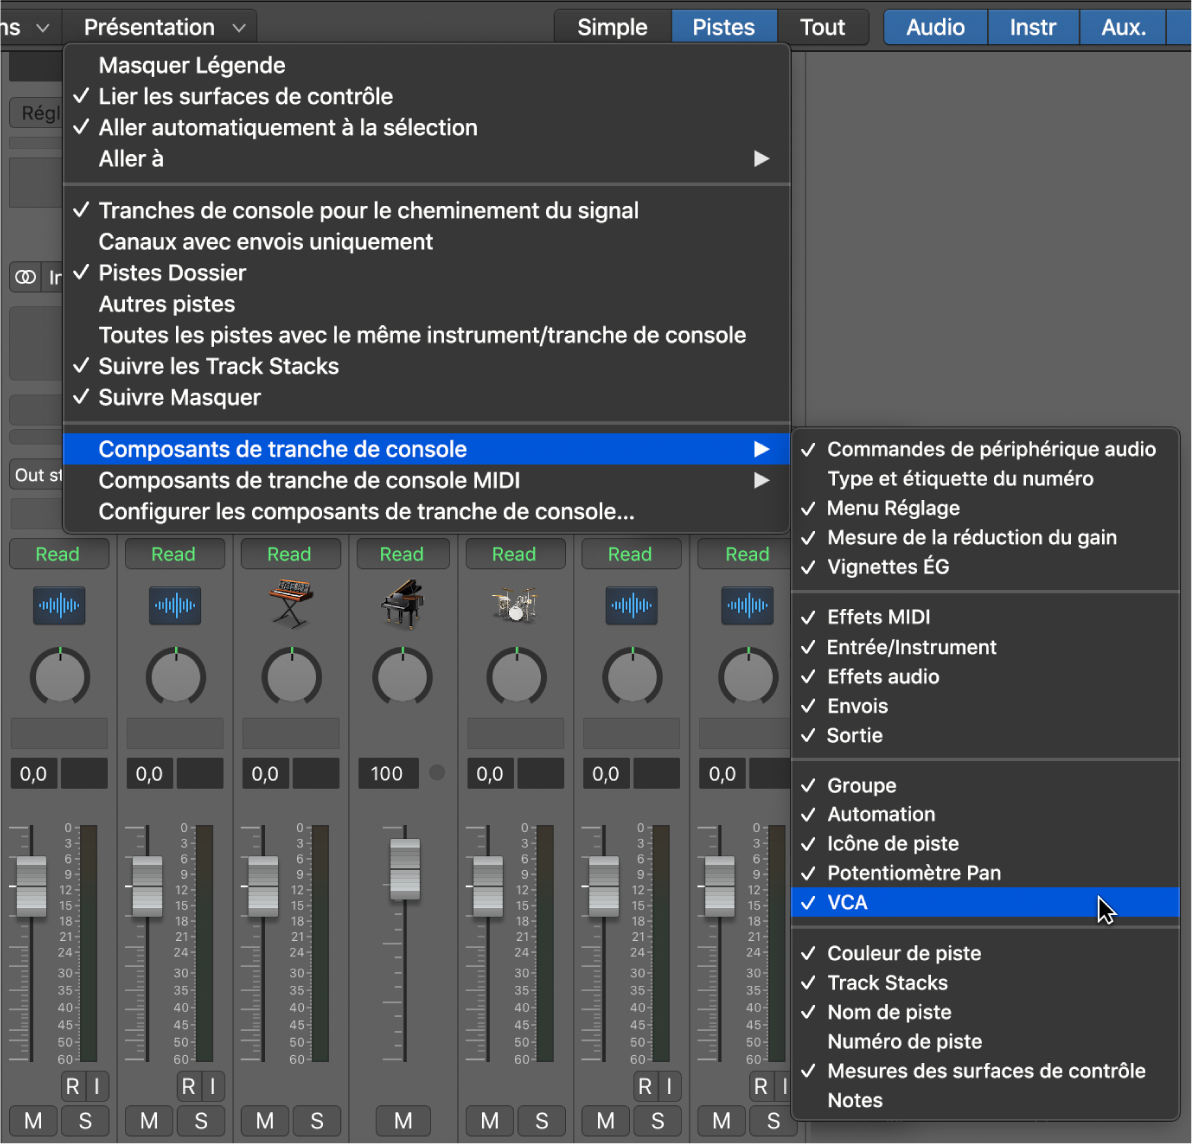 Figure. Sous-menu « Composants de tranche de console » dans le menu Présentation de la table de mixage.